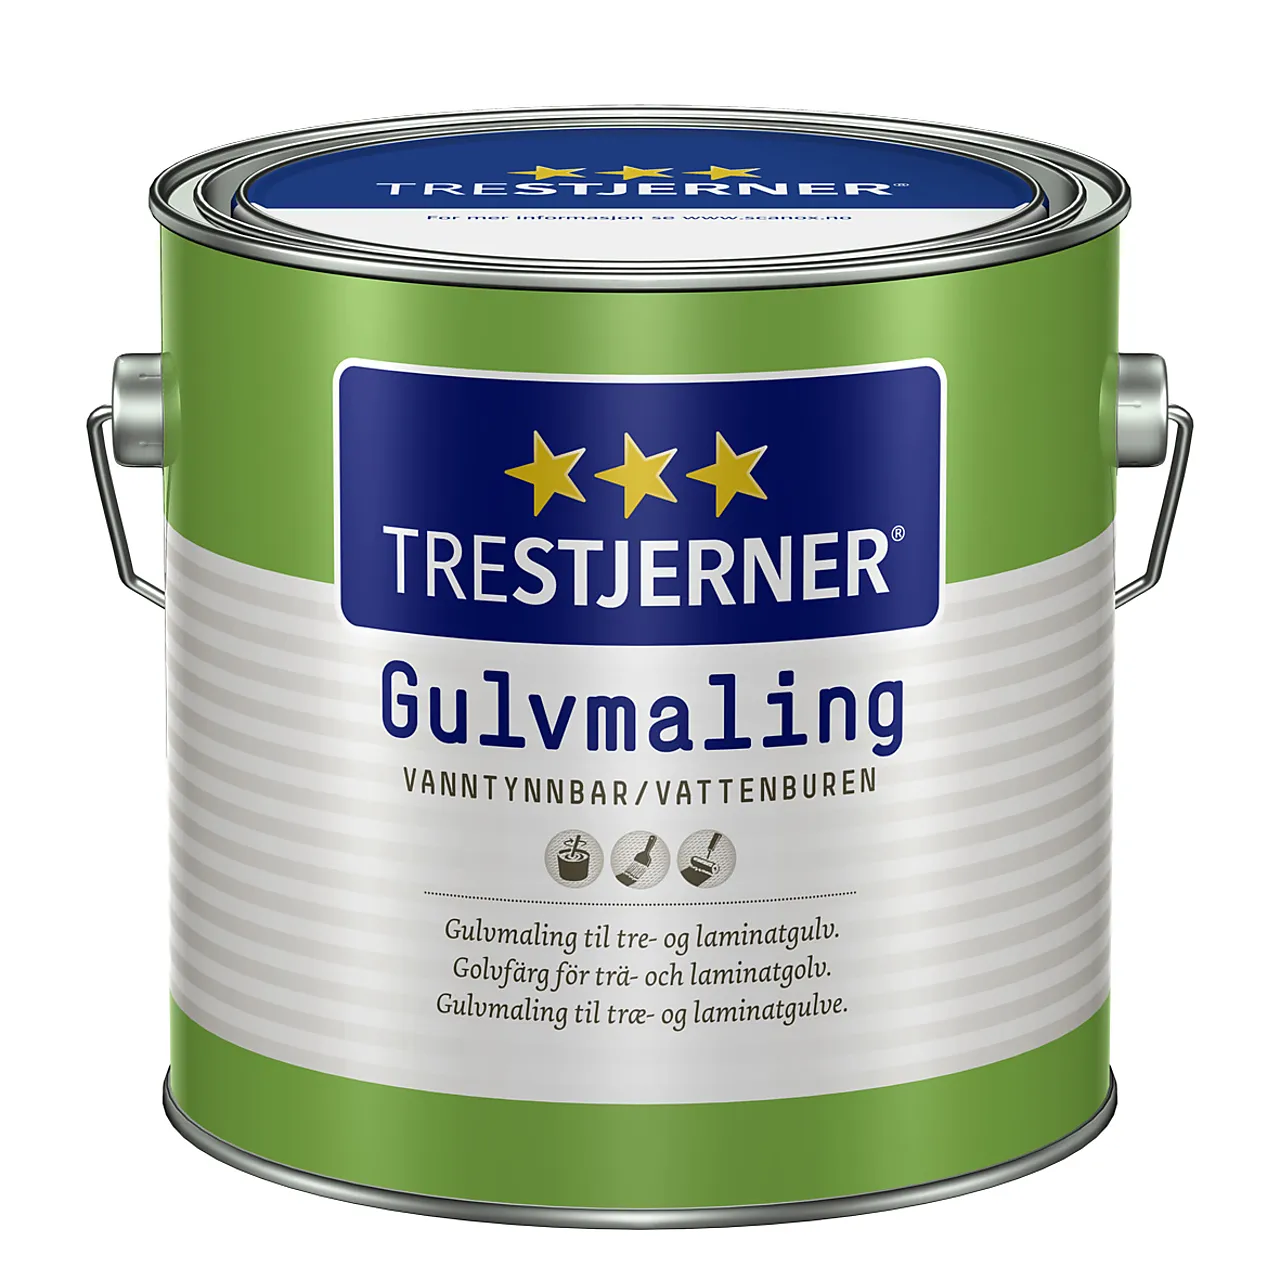 Trestjerner Gulvmaling matt C Base 2,7 liter null - null - 1